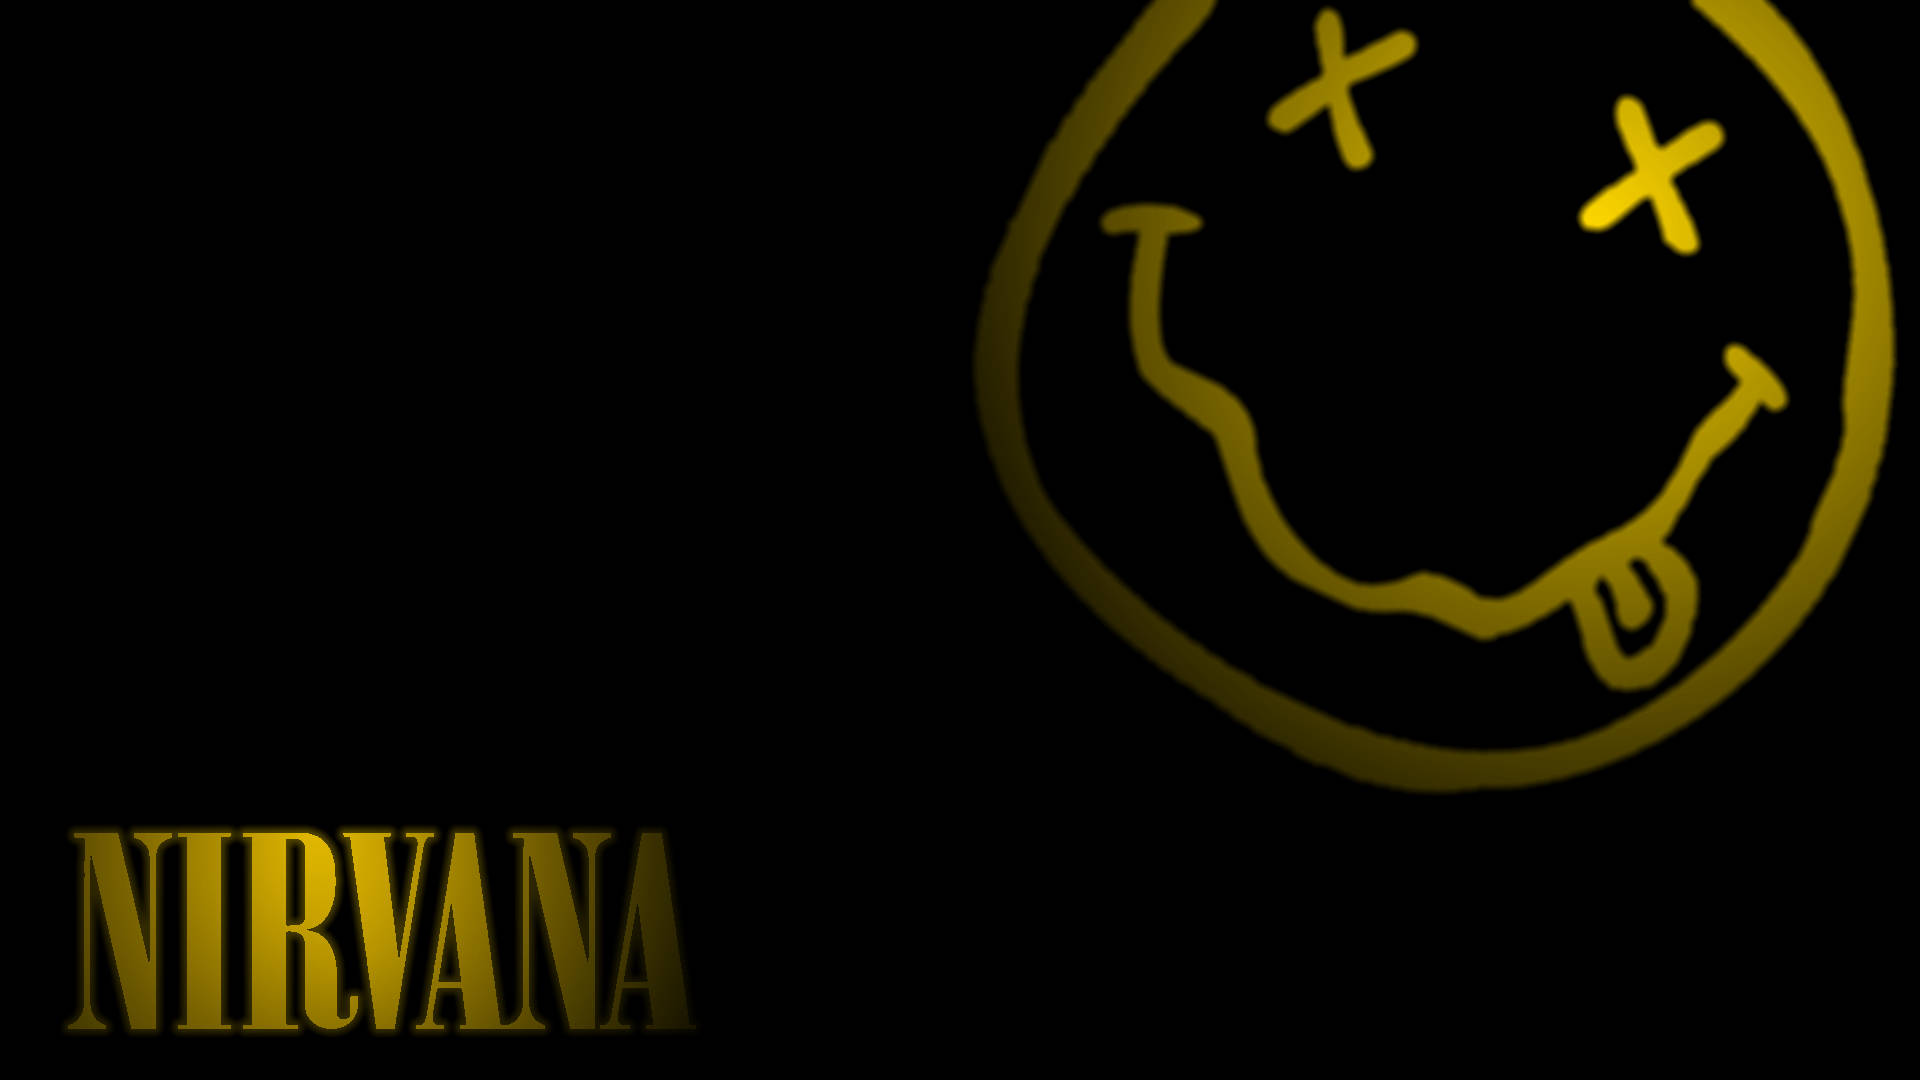 Emotive Smiley Logo Of Legendary Band, Nirvana